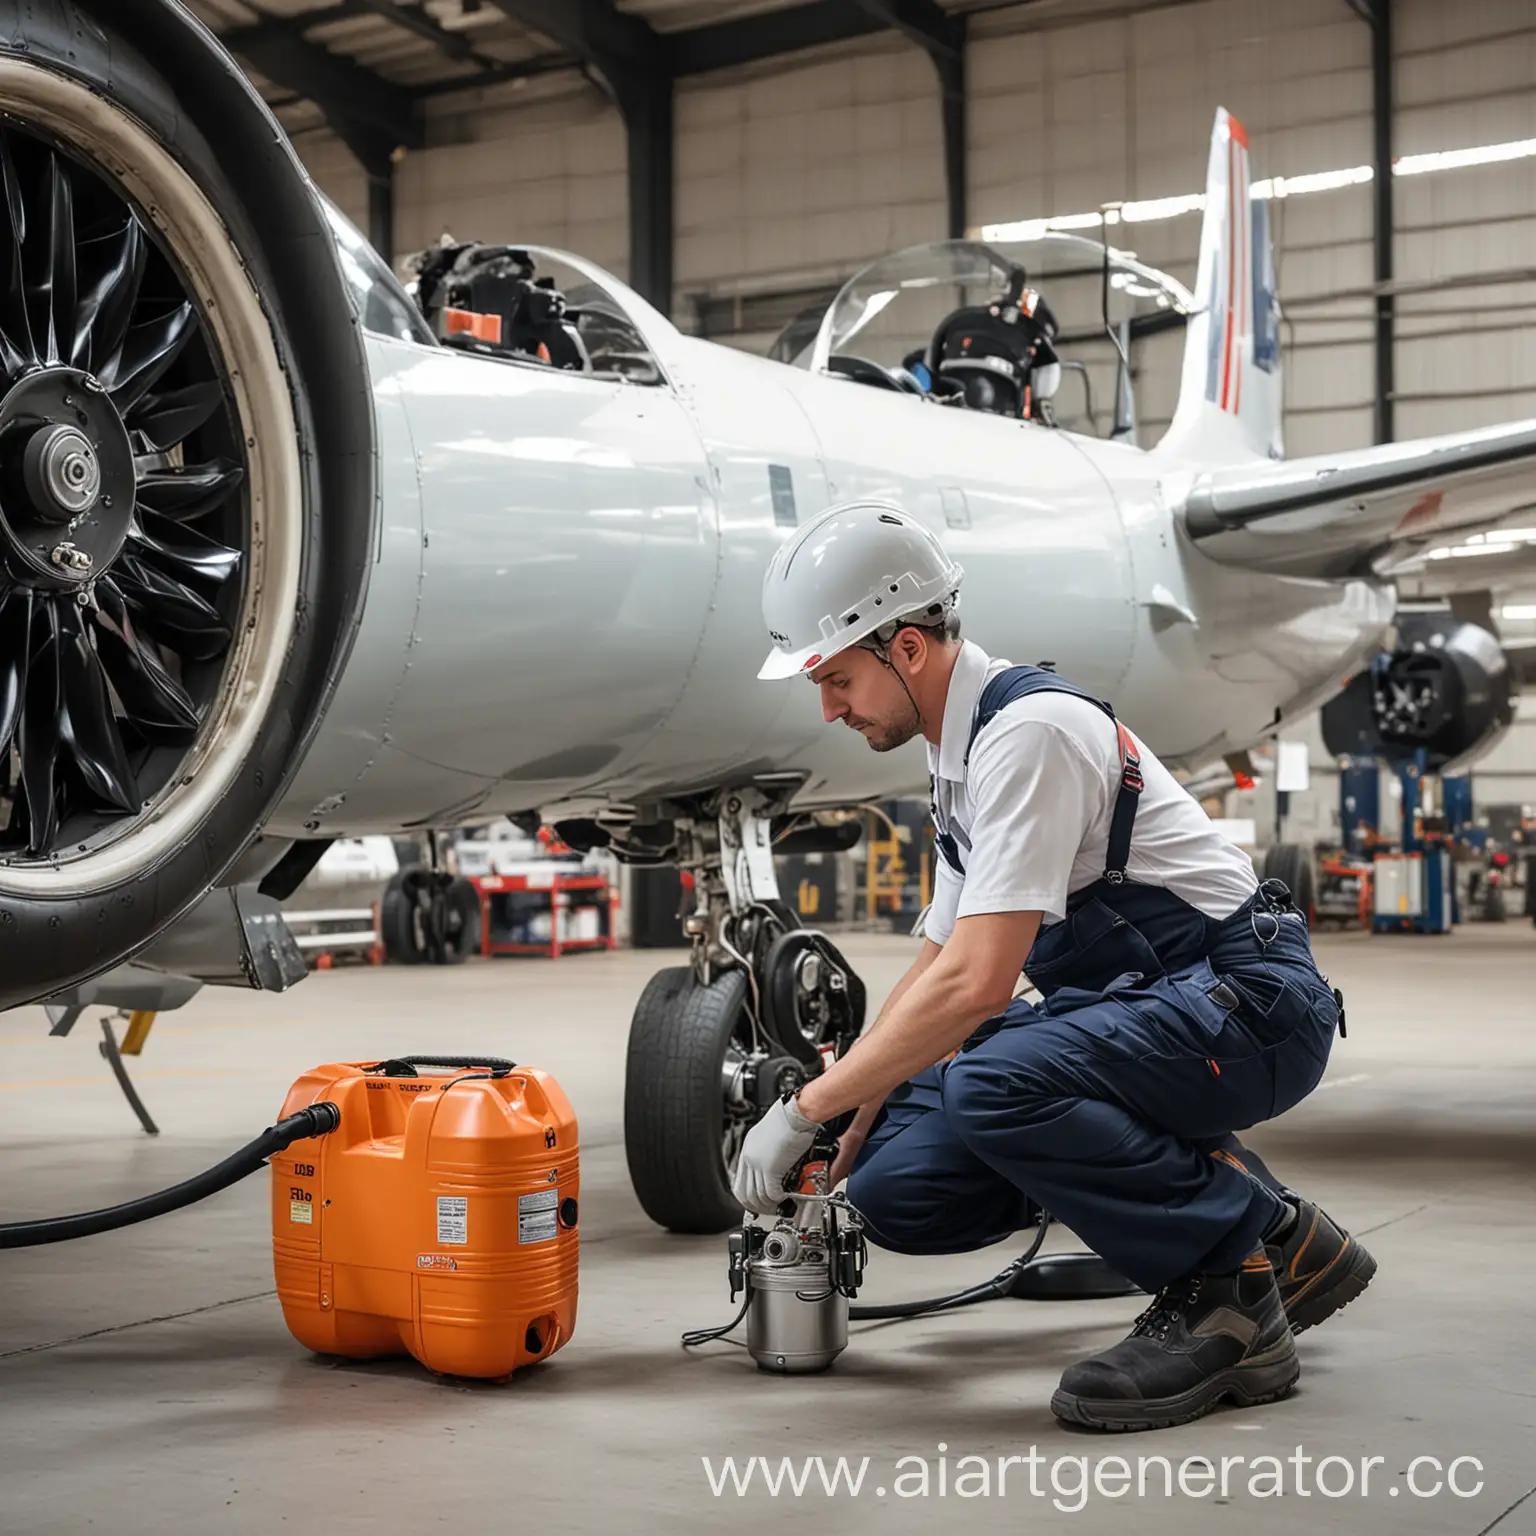 Worker-Inspecting-Aircraft-Hangar-Air-Compressor